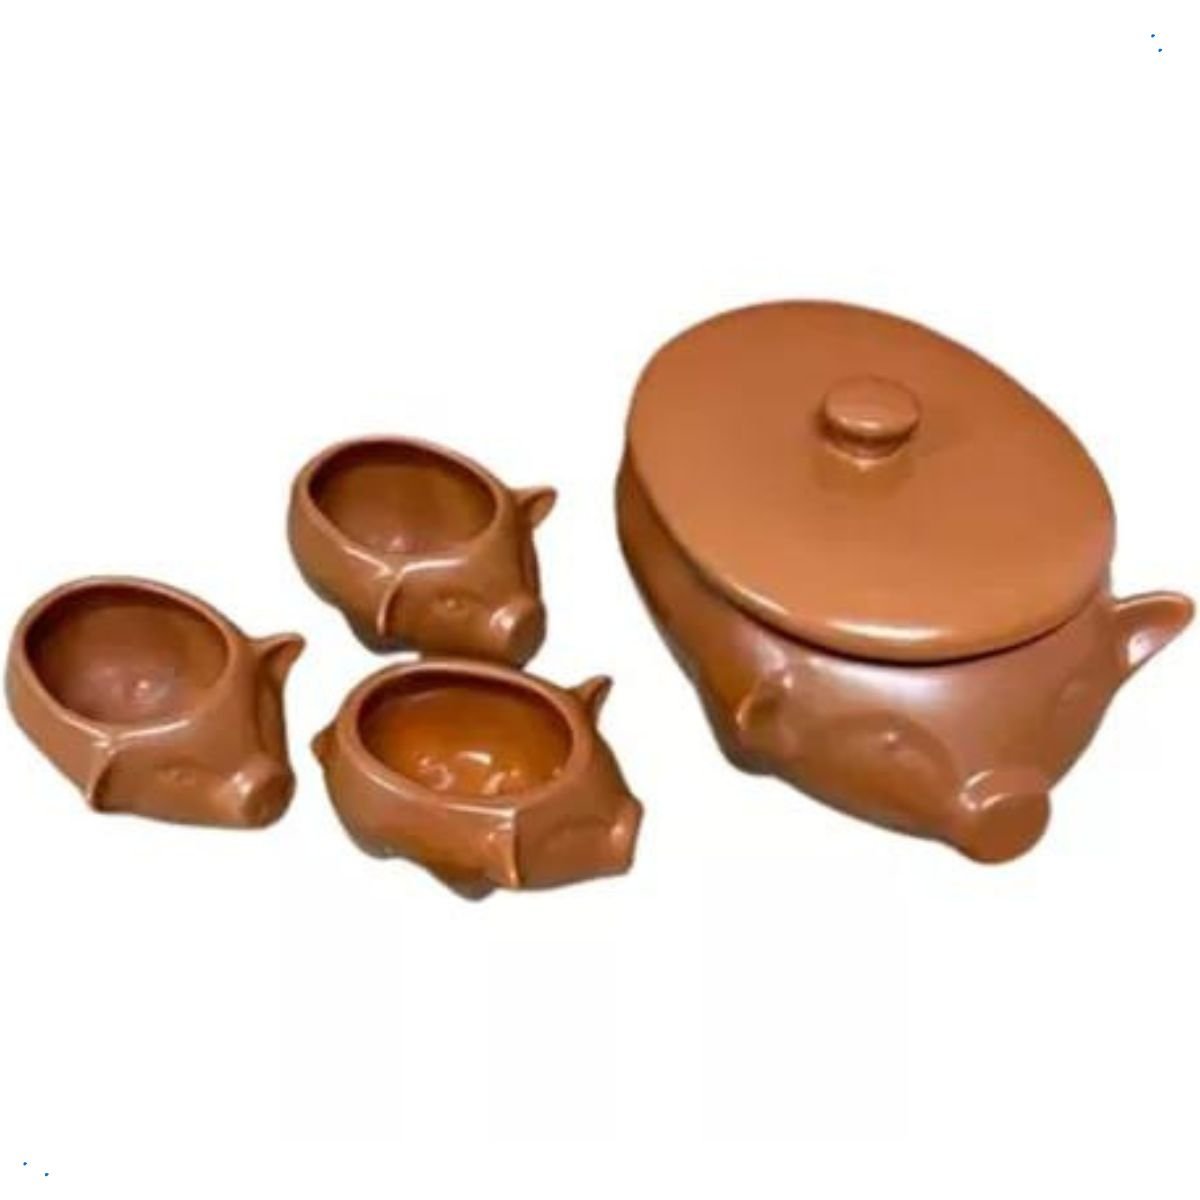 Kit Feijoada Caldo Sopeira Bowl Cerâmica 4 Peças Casa Dami Kit para Feijoada, Kit Feijoada, Sopeira,